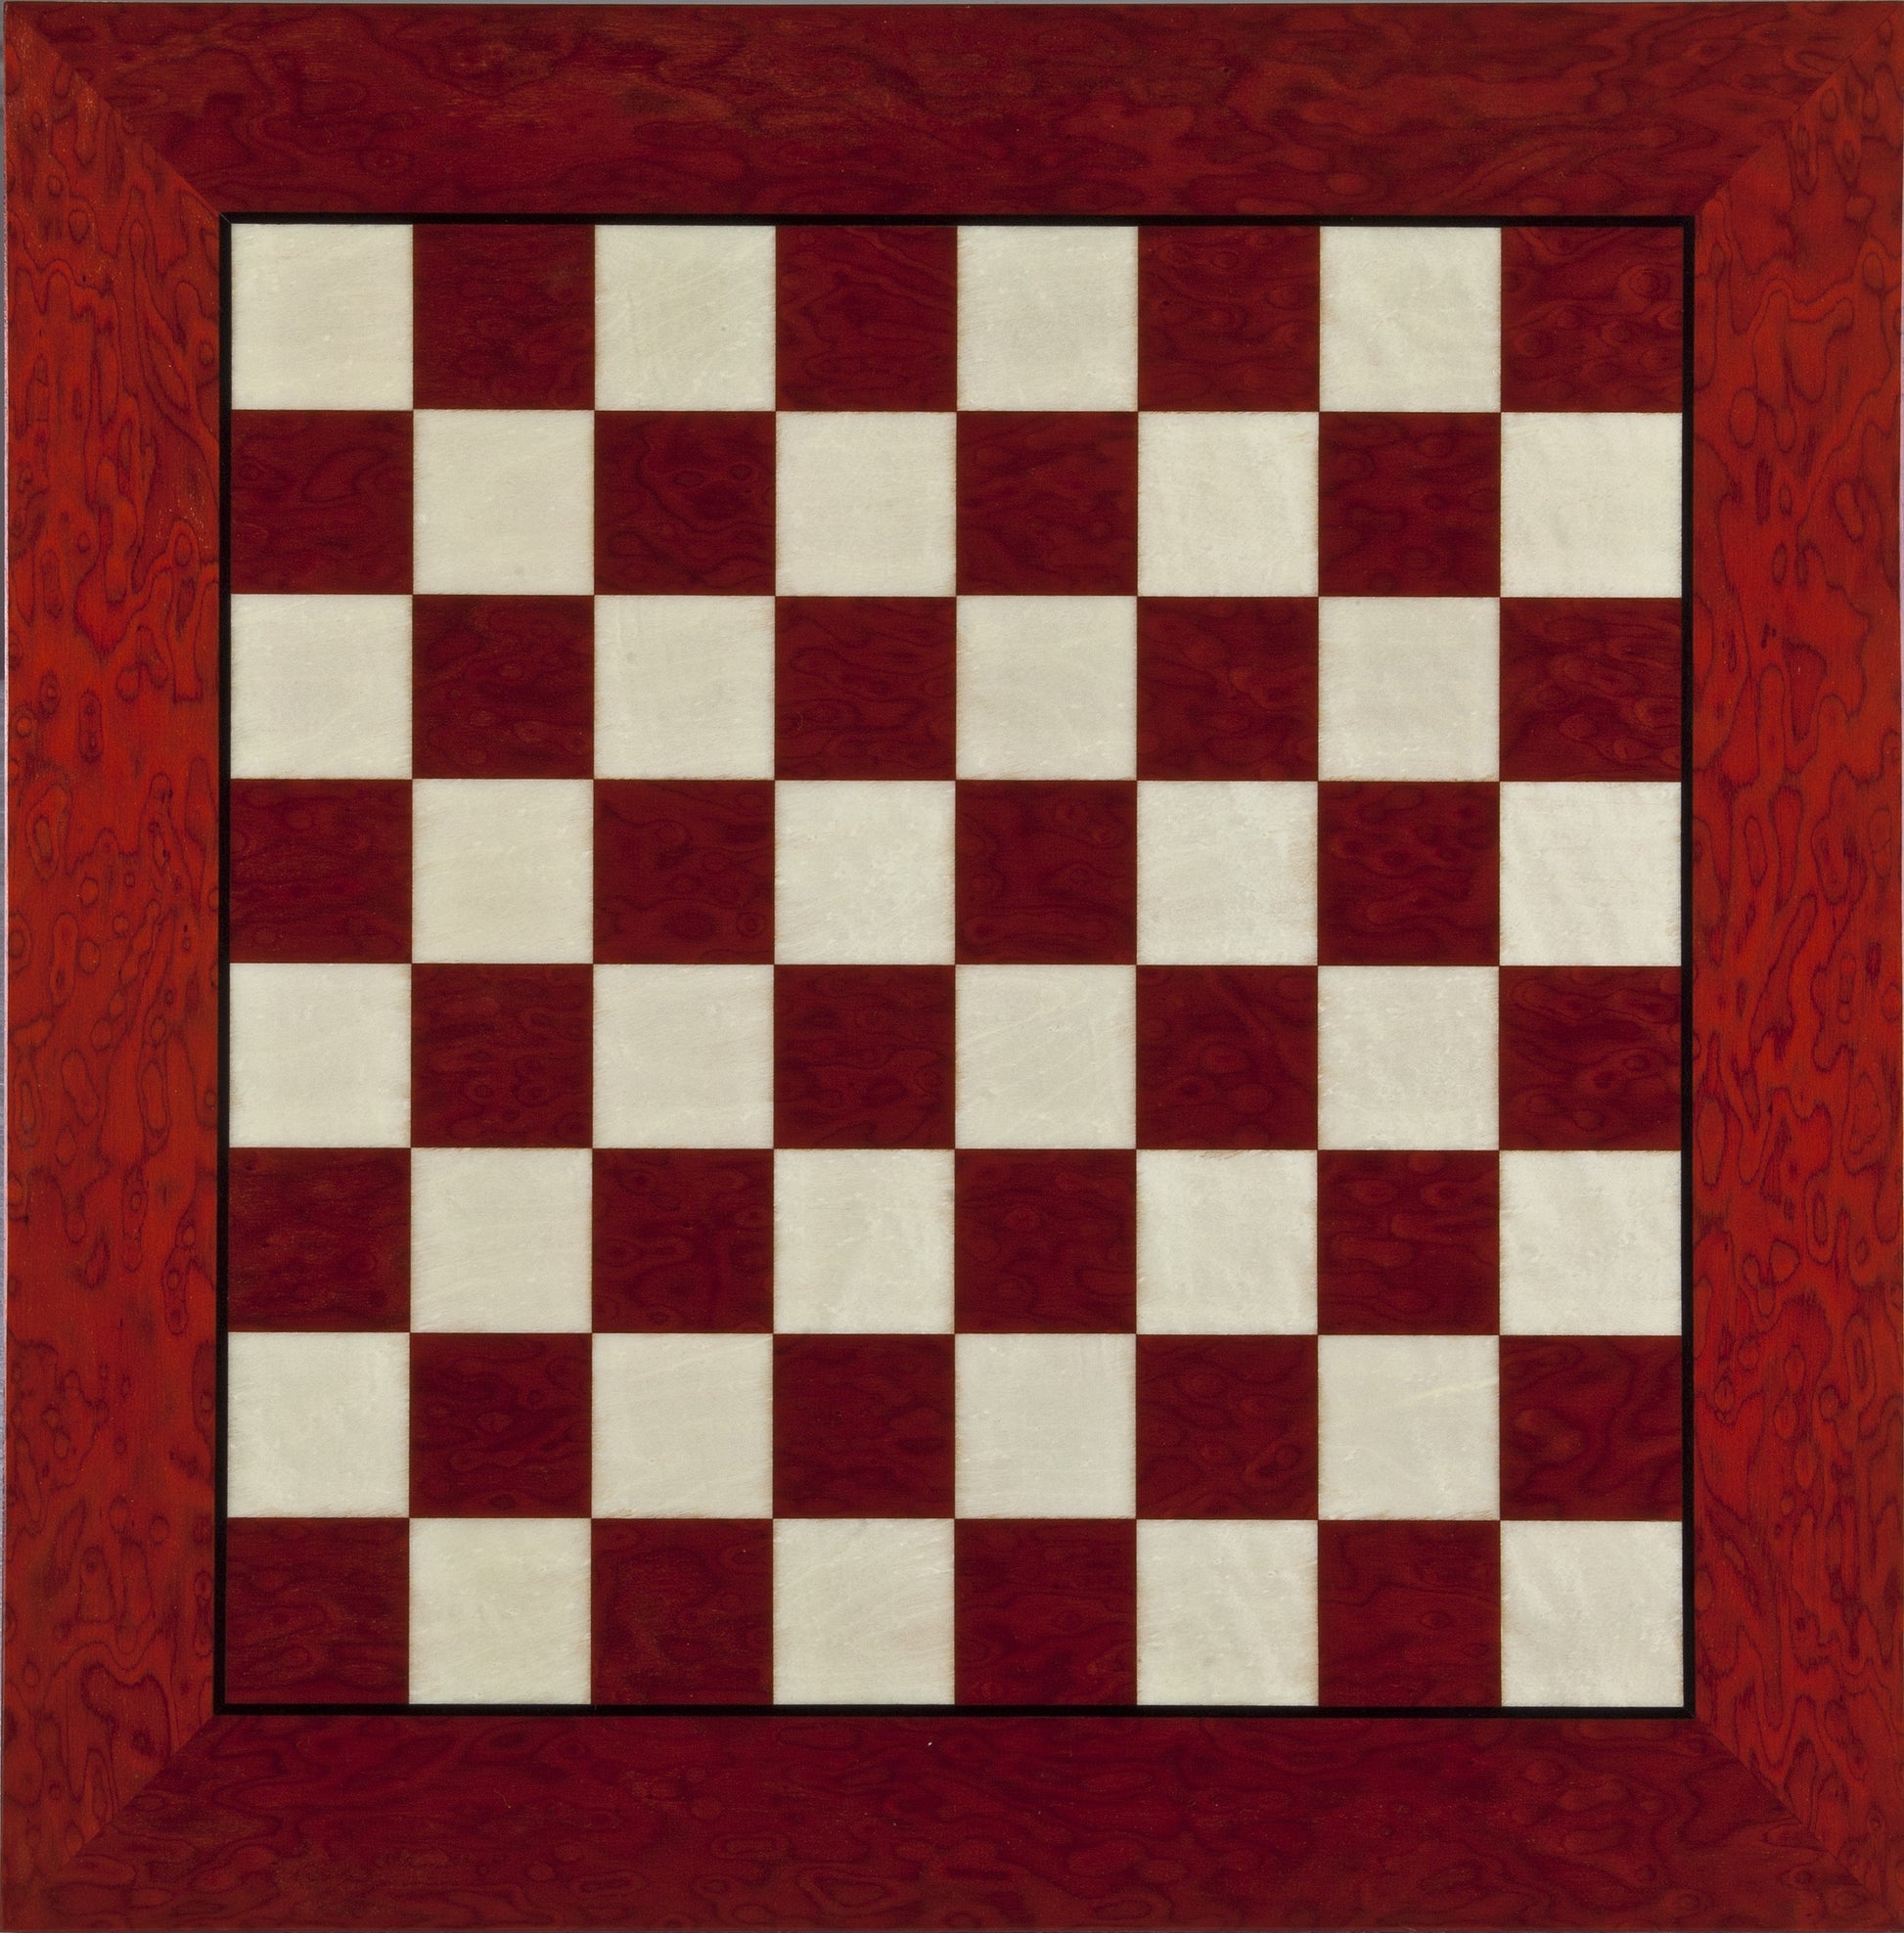 20 inch Elegant Wood Chess Board